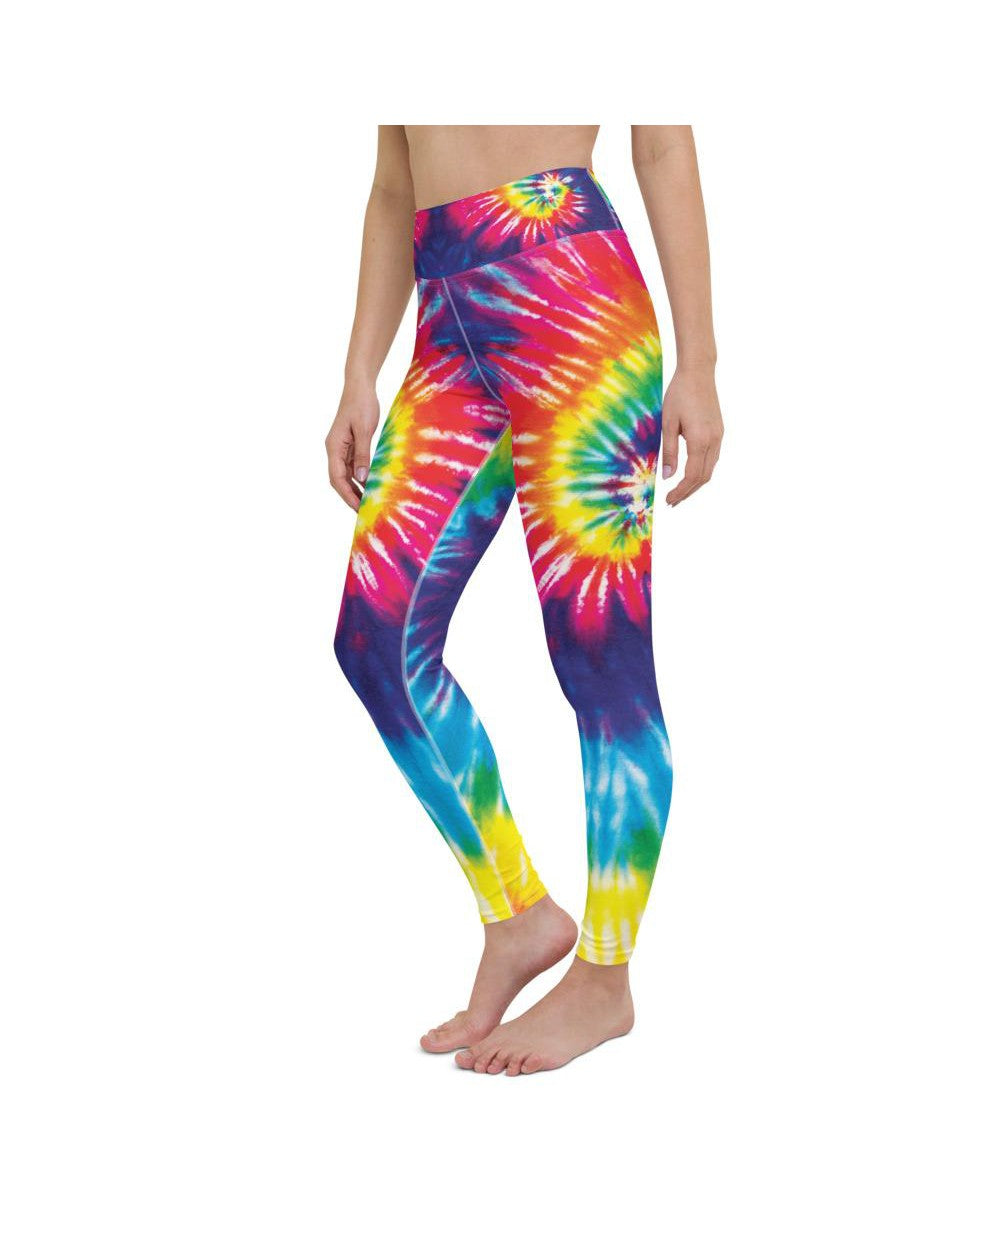 Tie Dye Leggings Women, Spiral Printed Yoga Pants Cute Graphic Workout